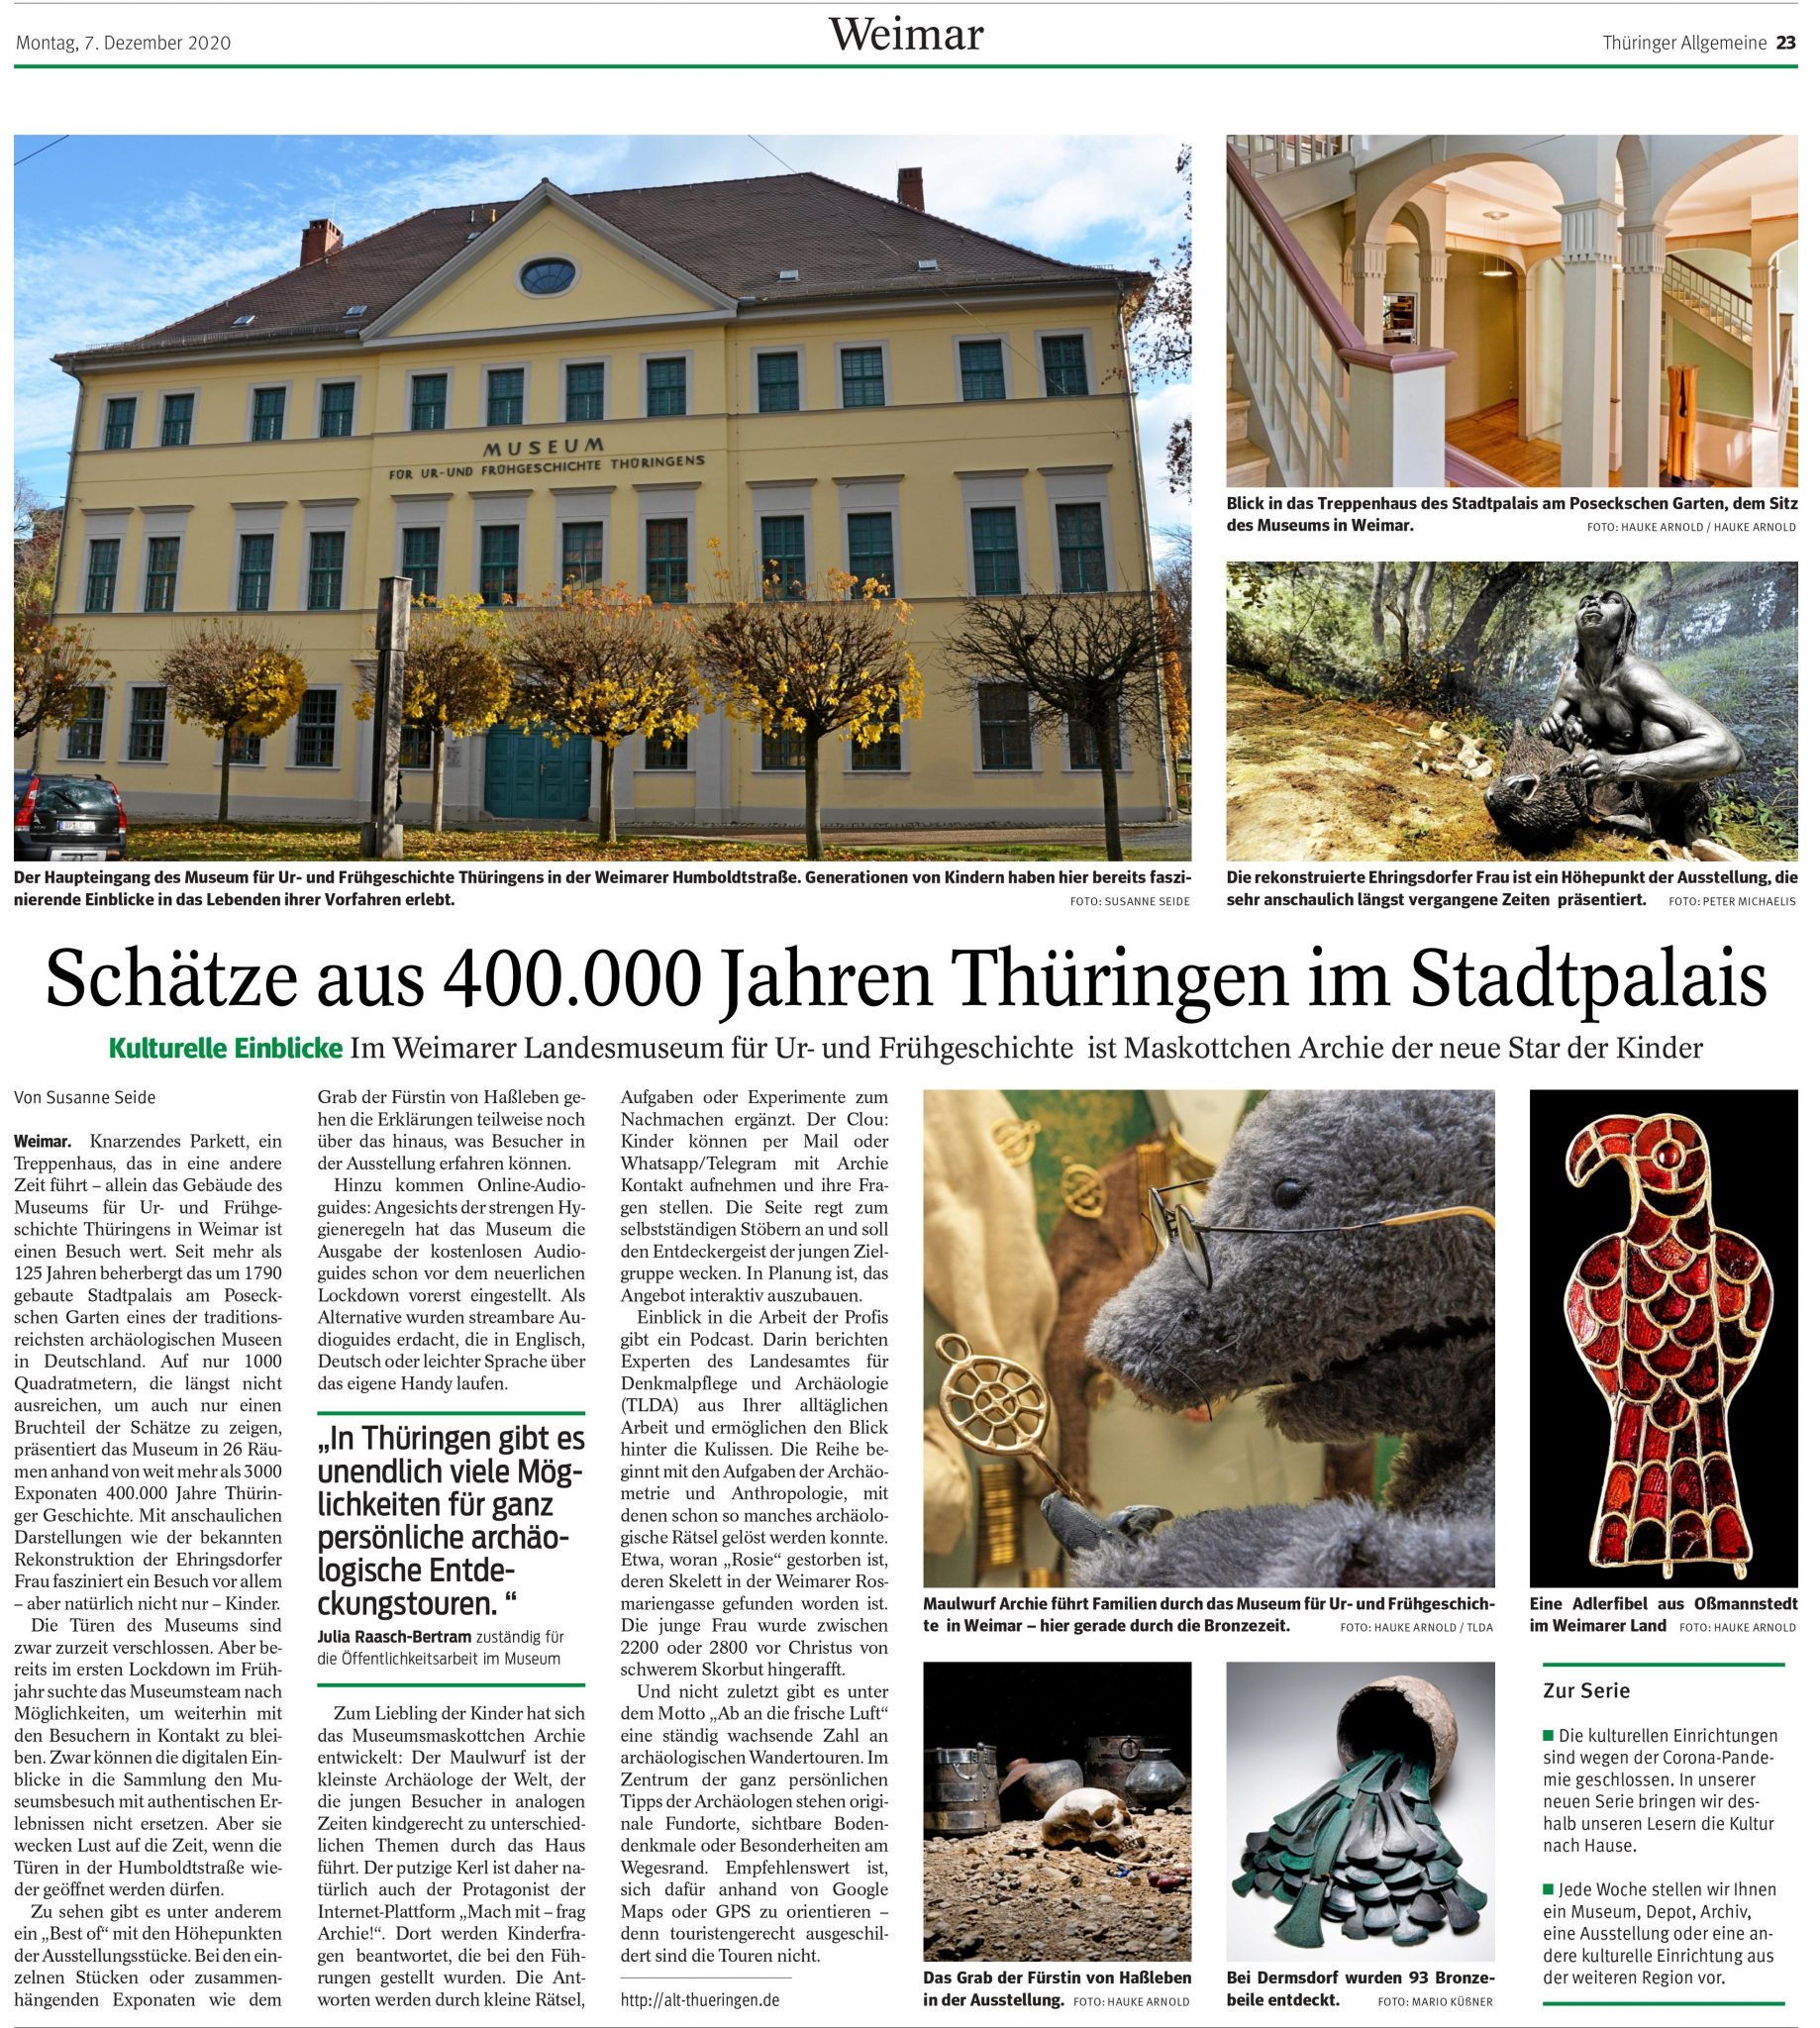 Link zum Bild mit dem Presseartikel aus der Thüringer Allgemeinen vom 7.12.2020